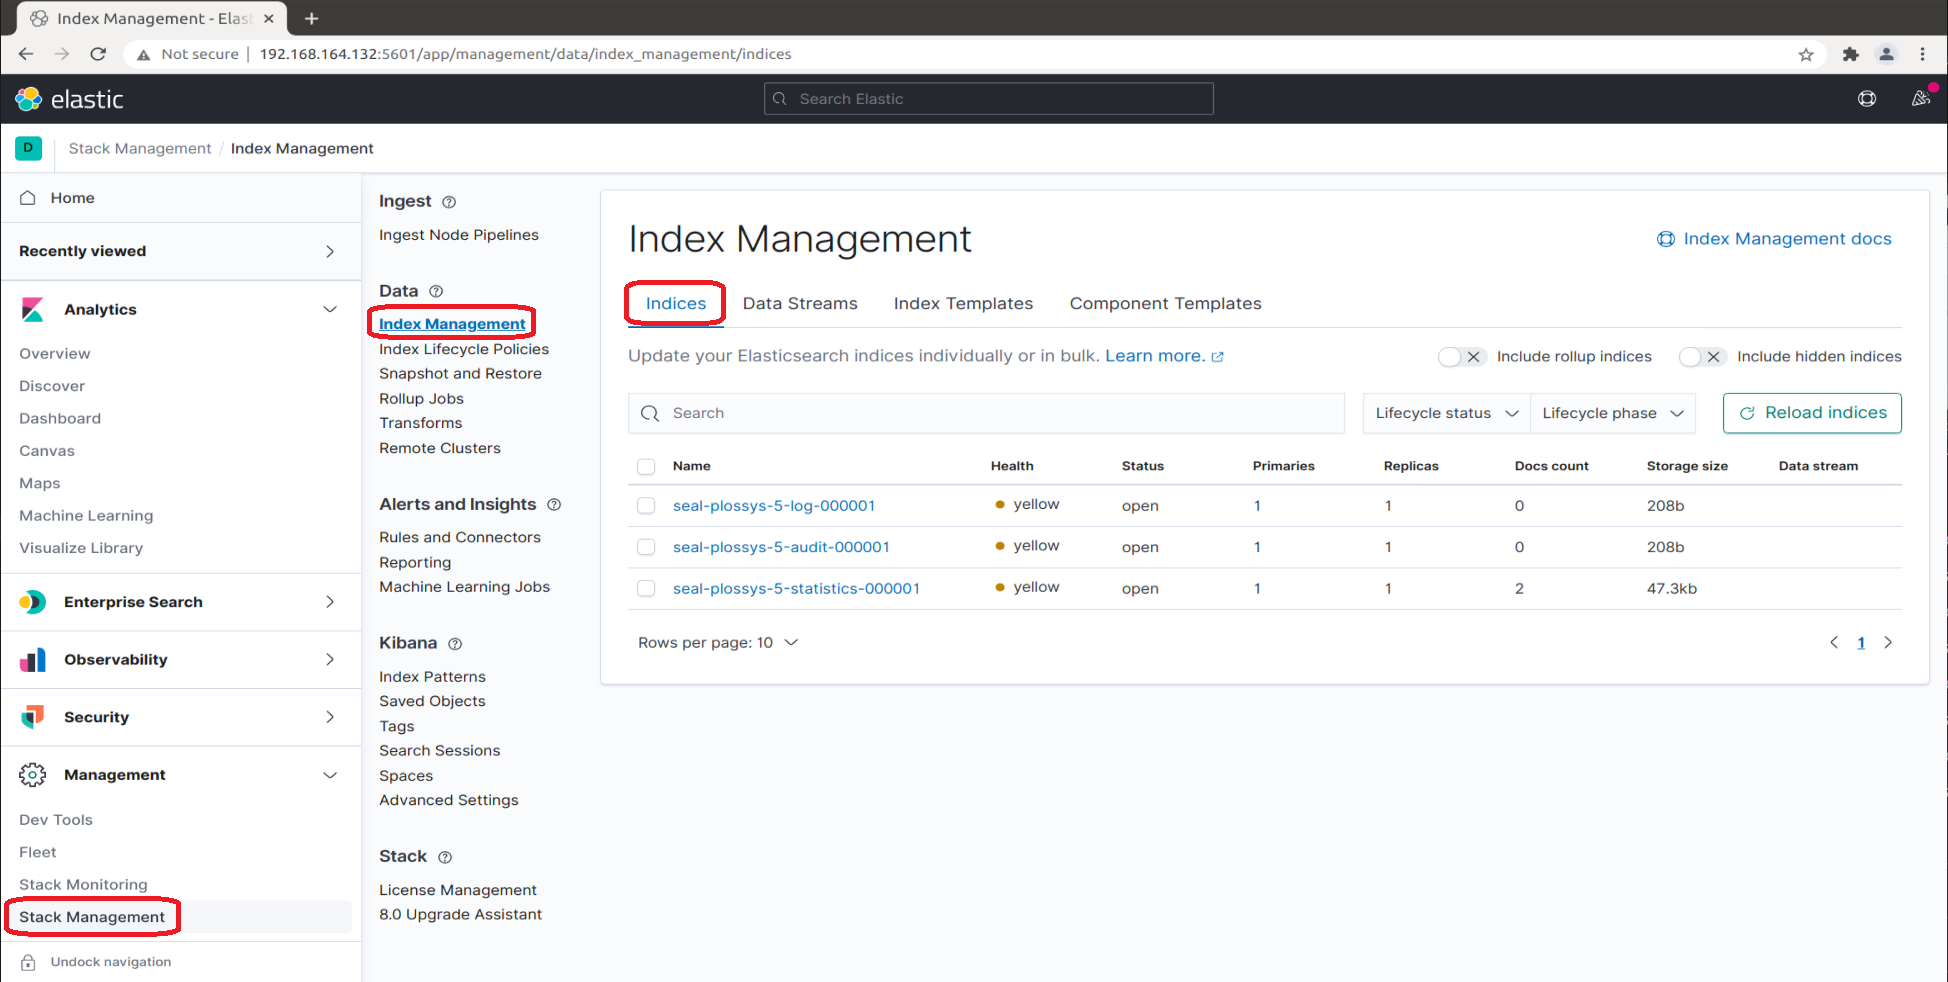 Index Management